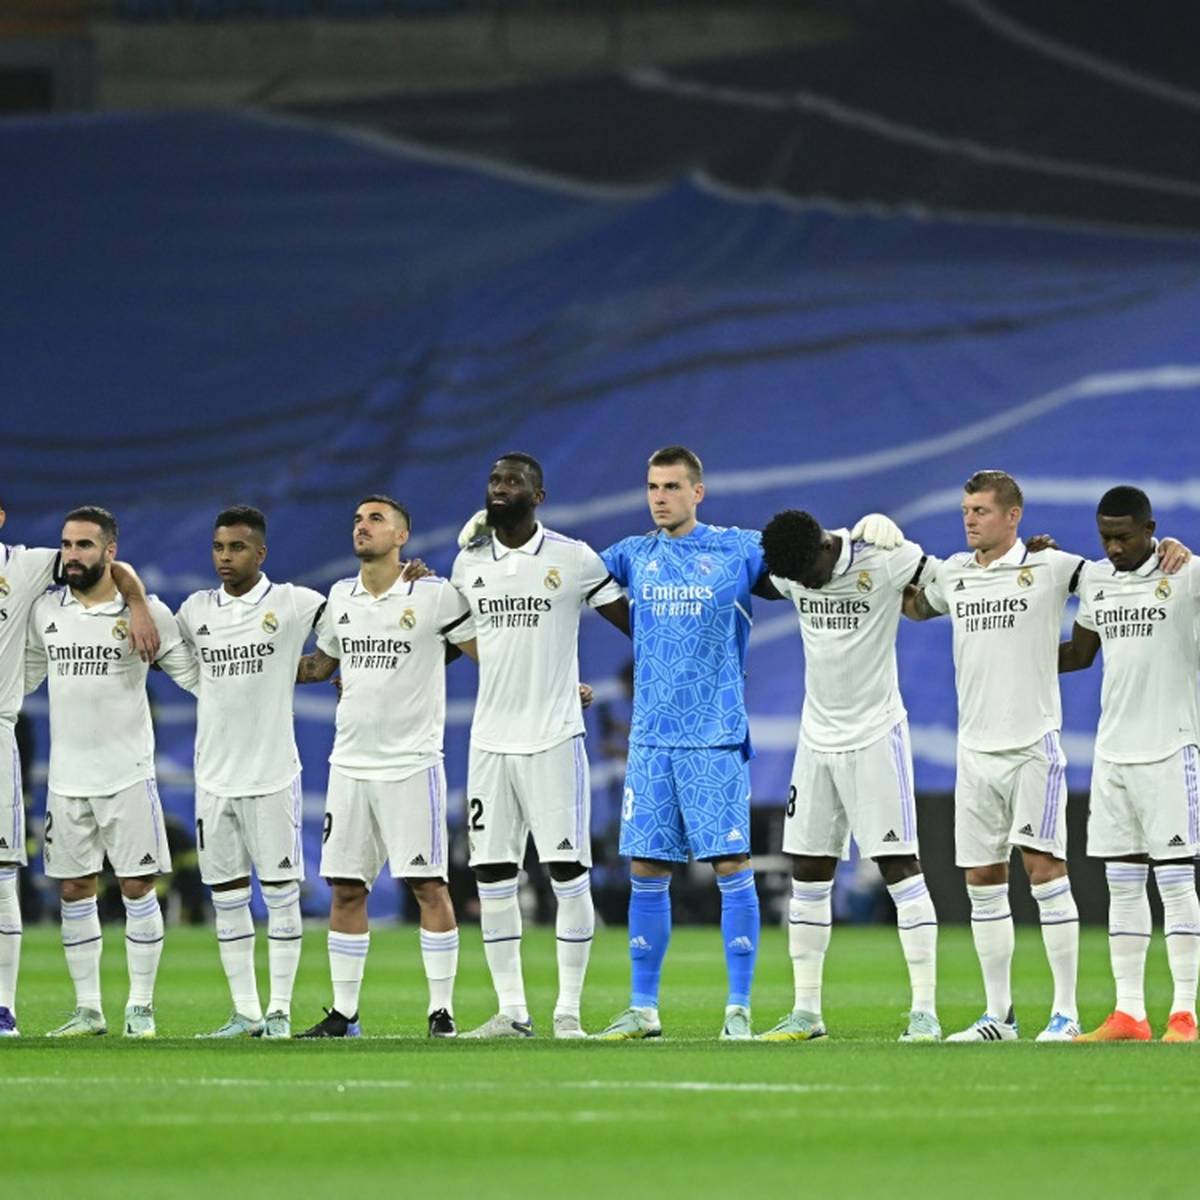 Der europäische Vereinsfußball wird unter der Woche der Opfern der Stadionkatastrophe in Indonesien mit einer Schweigeminute gedenken.